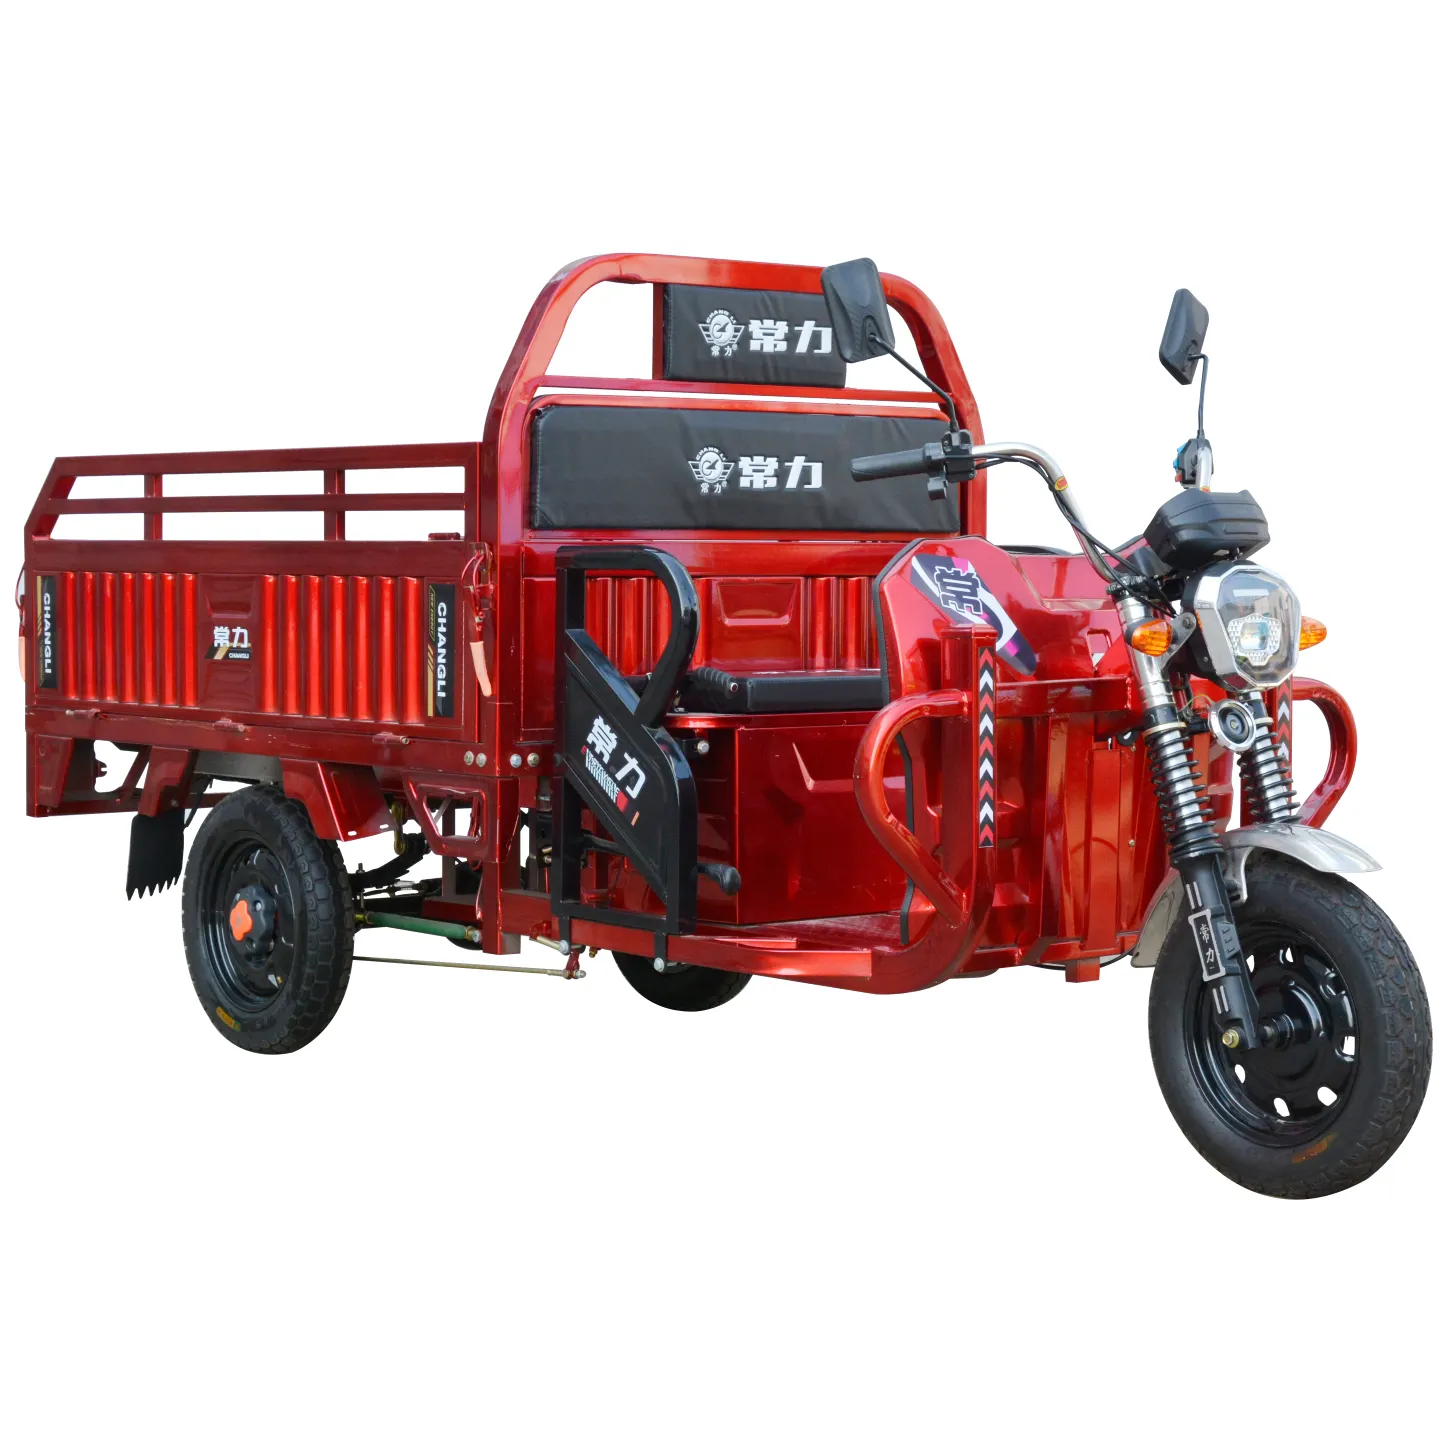 Trung Quốc chất lượng hàng đầu 1.8m ba bánh xe 5 chỗ ngồi điện xe kéo ba bánh với giá rẻ